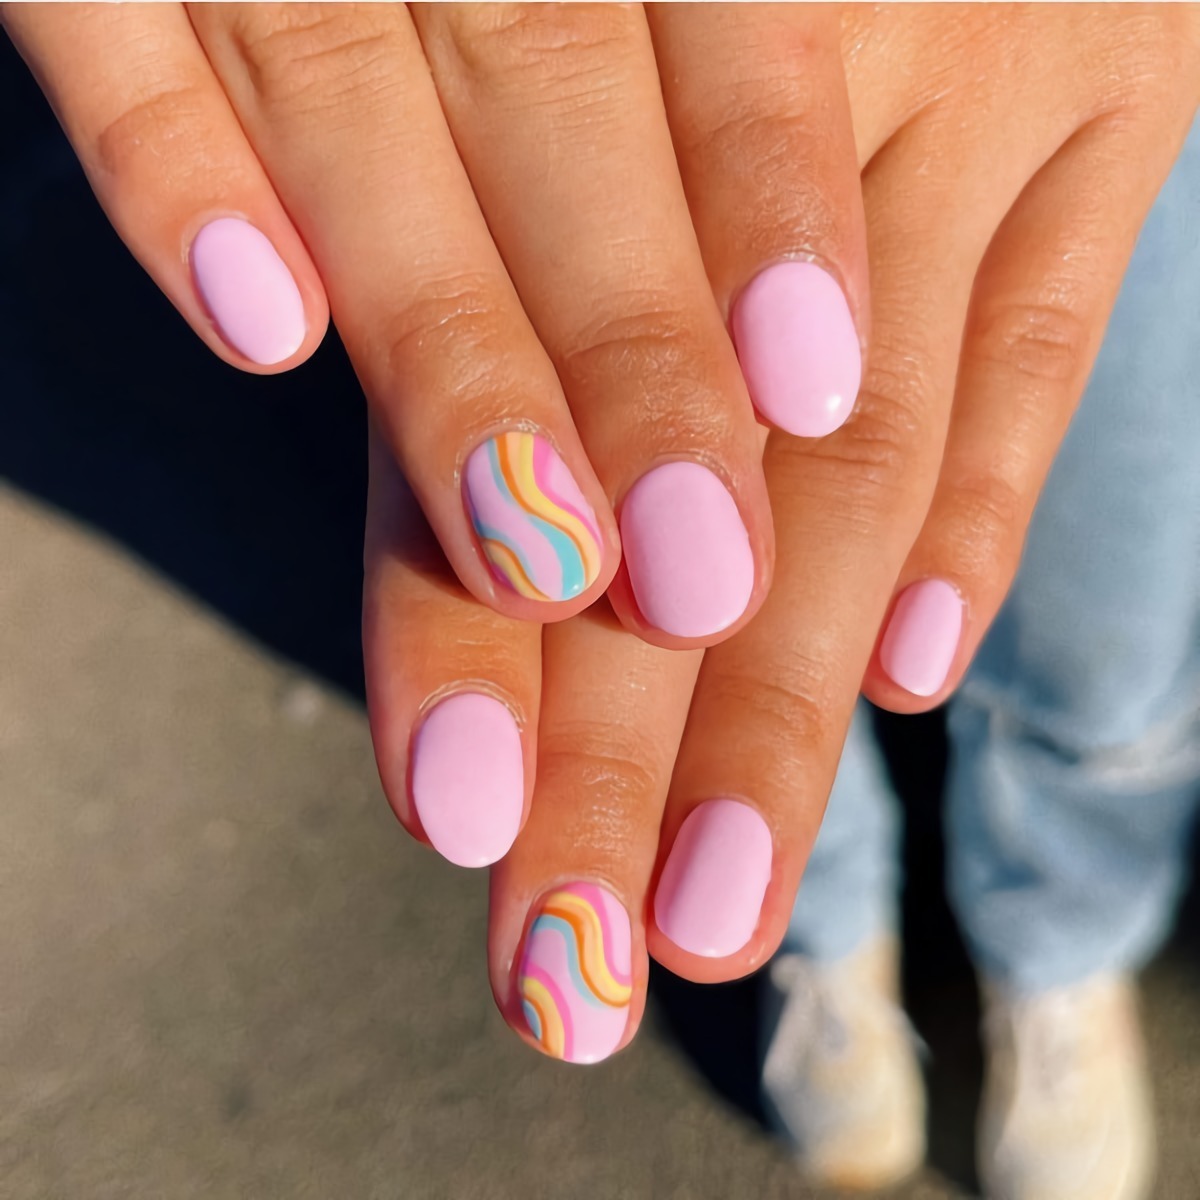 manicure unghie corte ovali disegno arcobaleno rosa